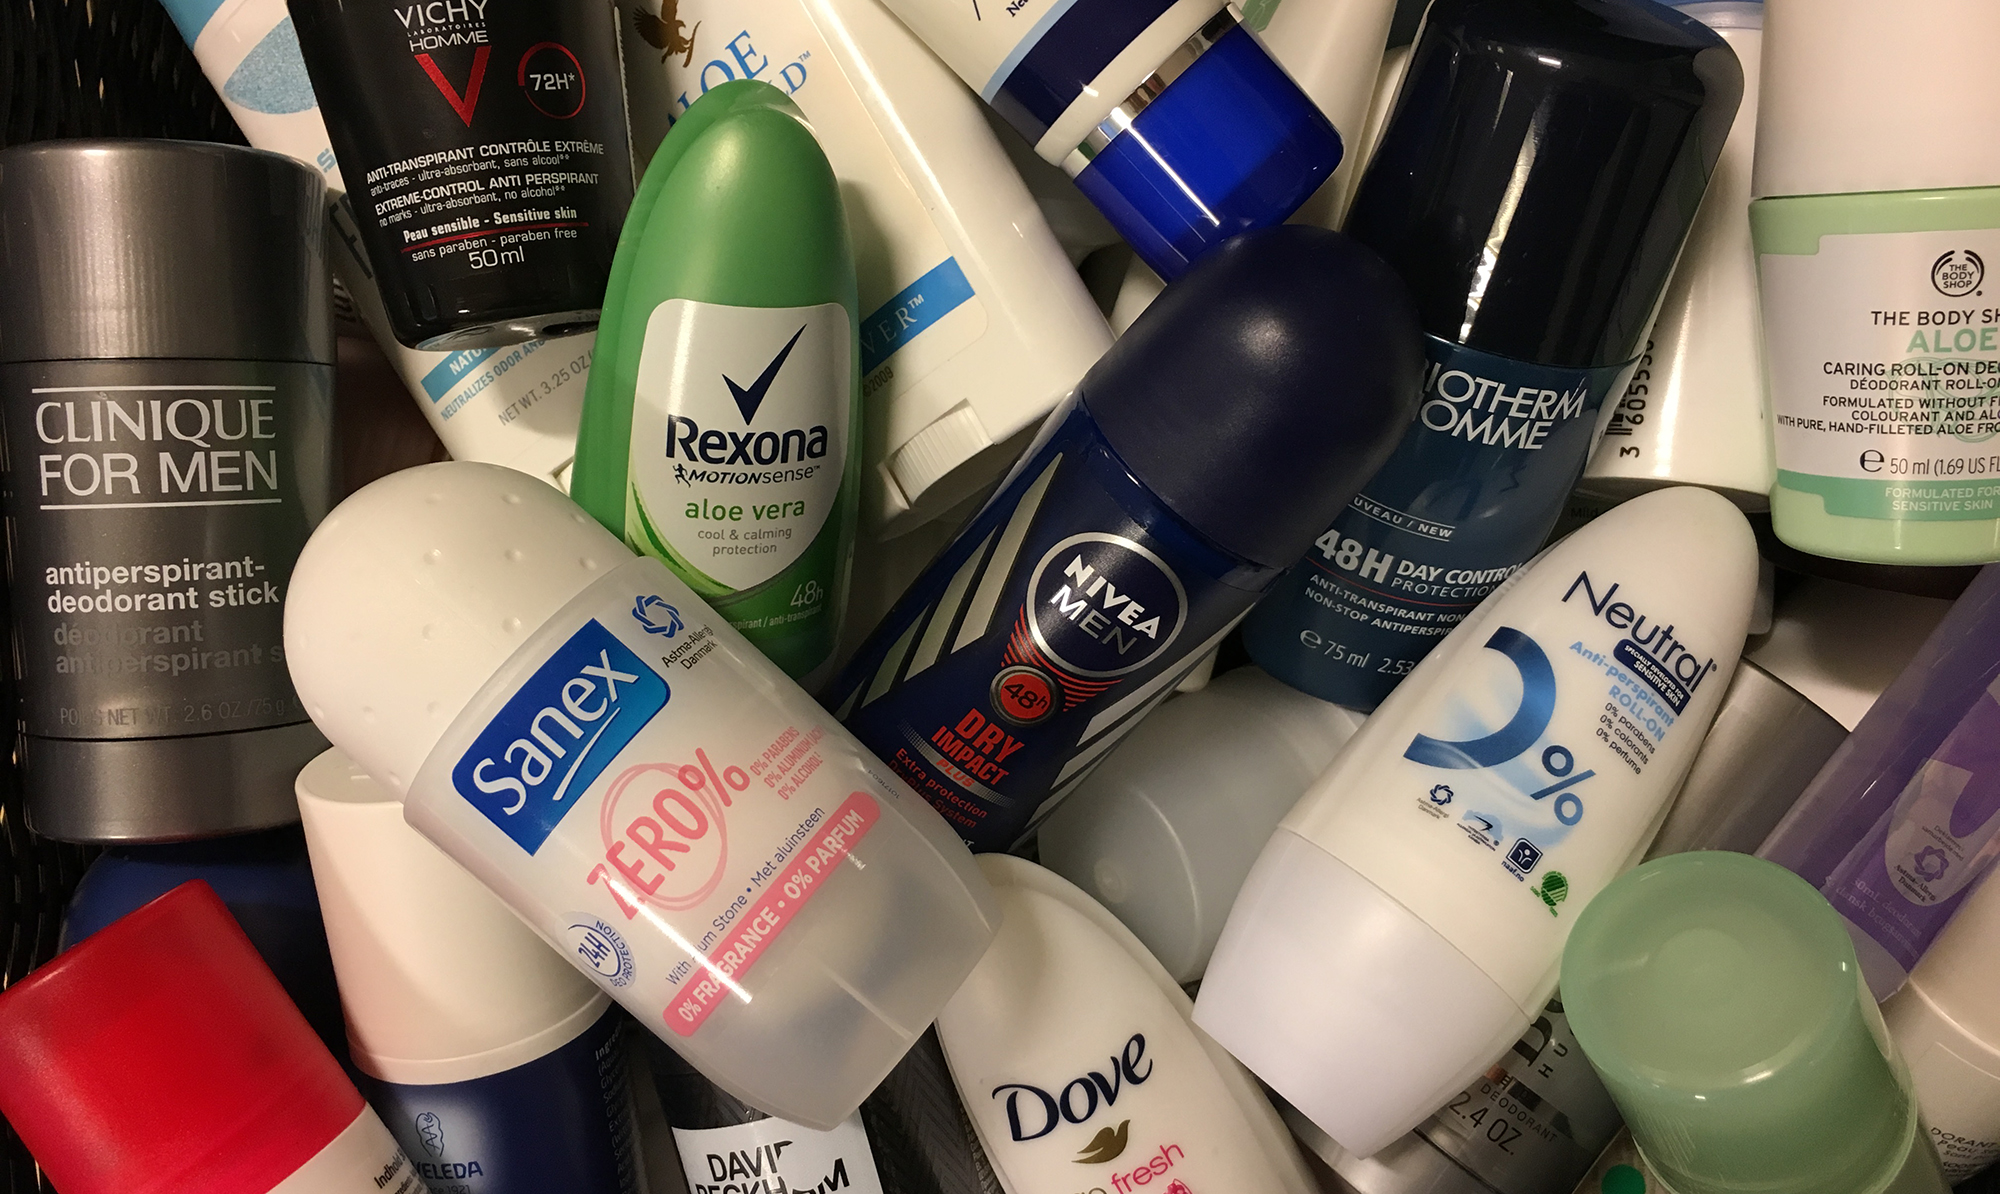 Stor kemi deodoranter: Flere produkter dumper - ALT.dk